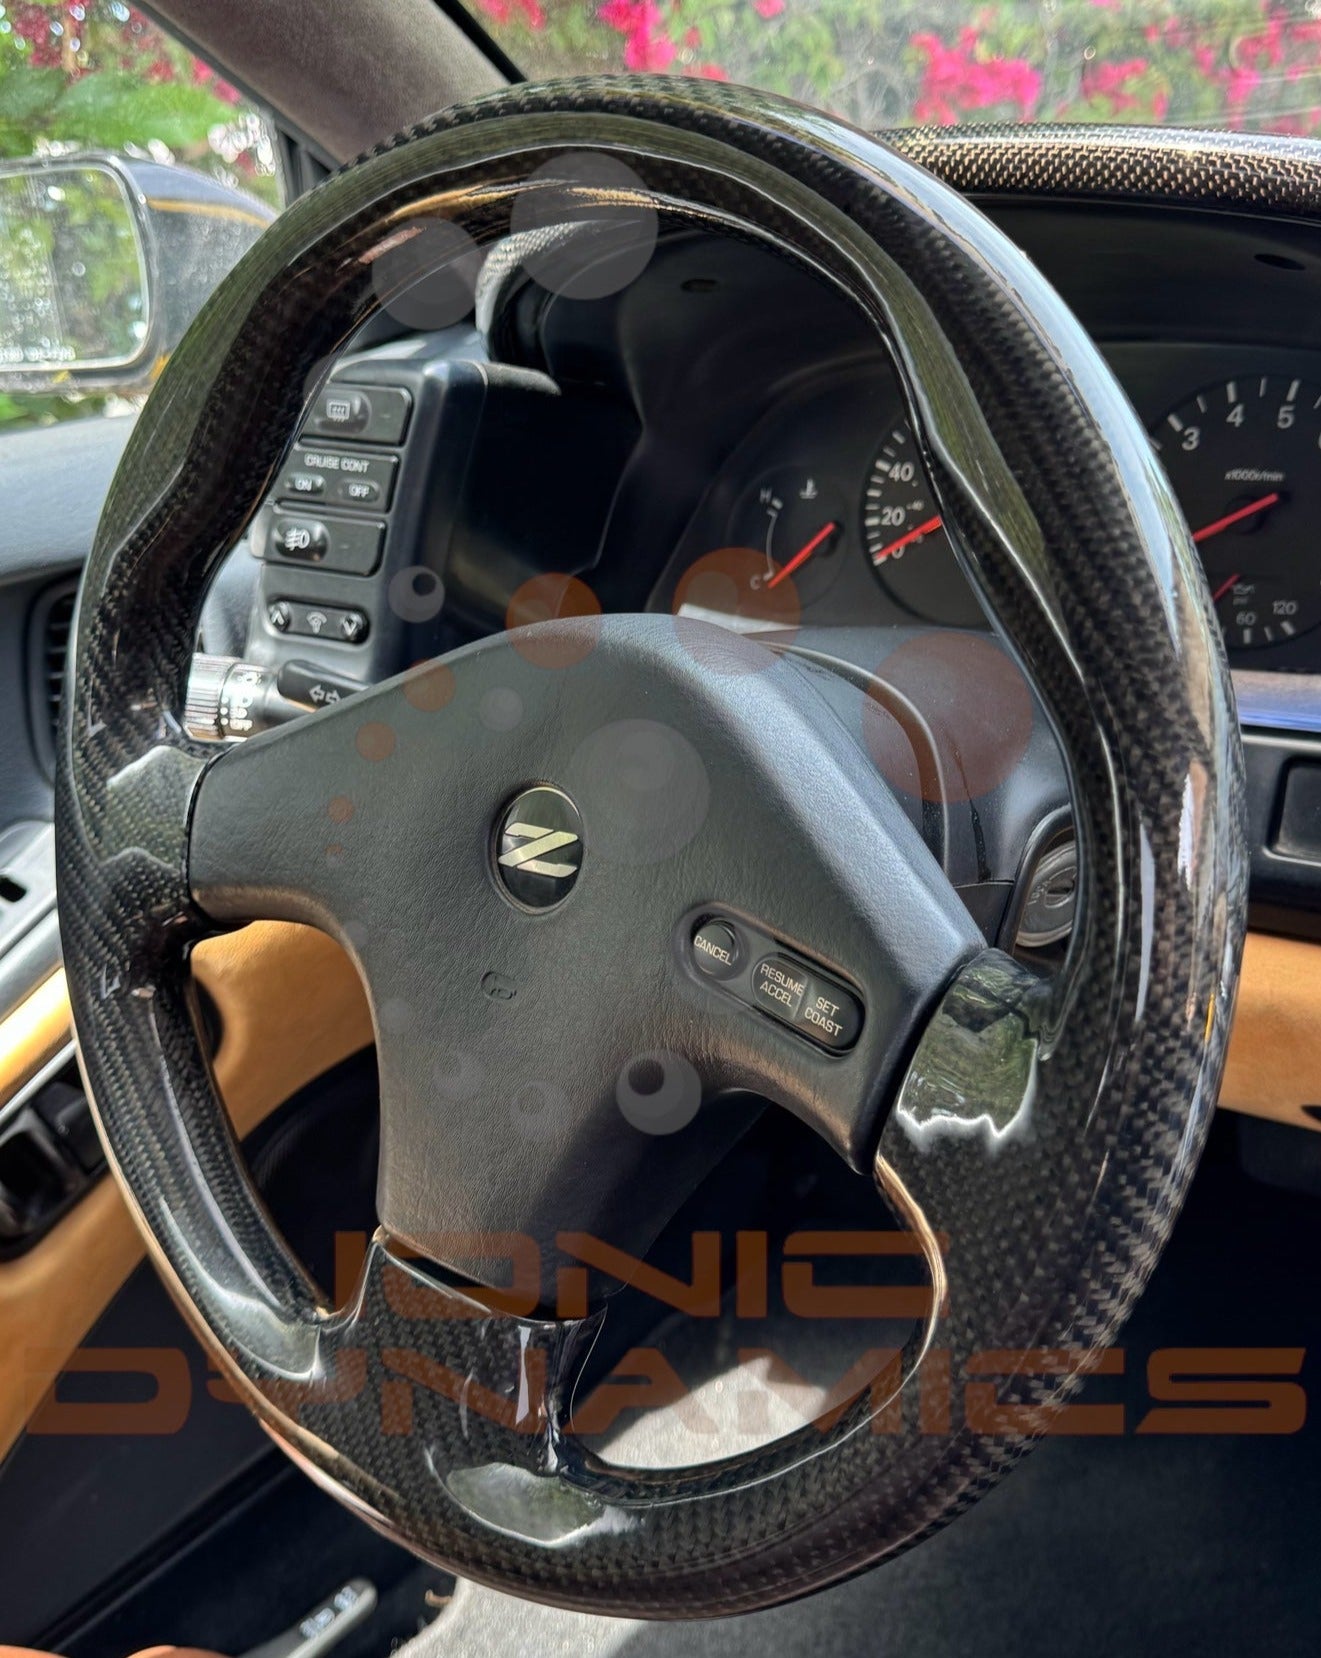 300zx Z32 Carbon Fiber wrapped steering wheel